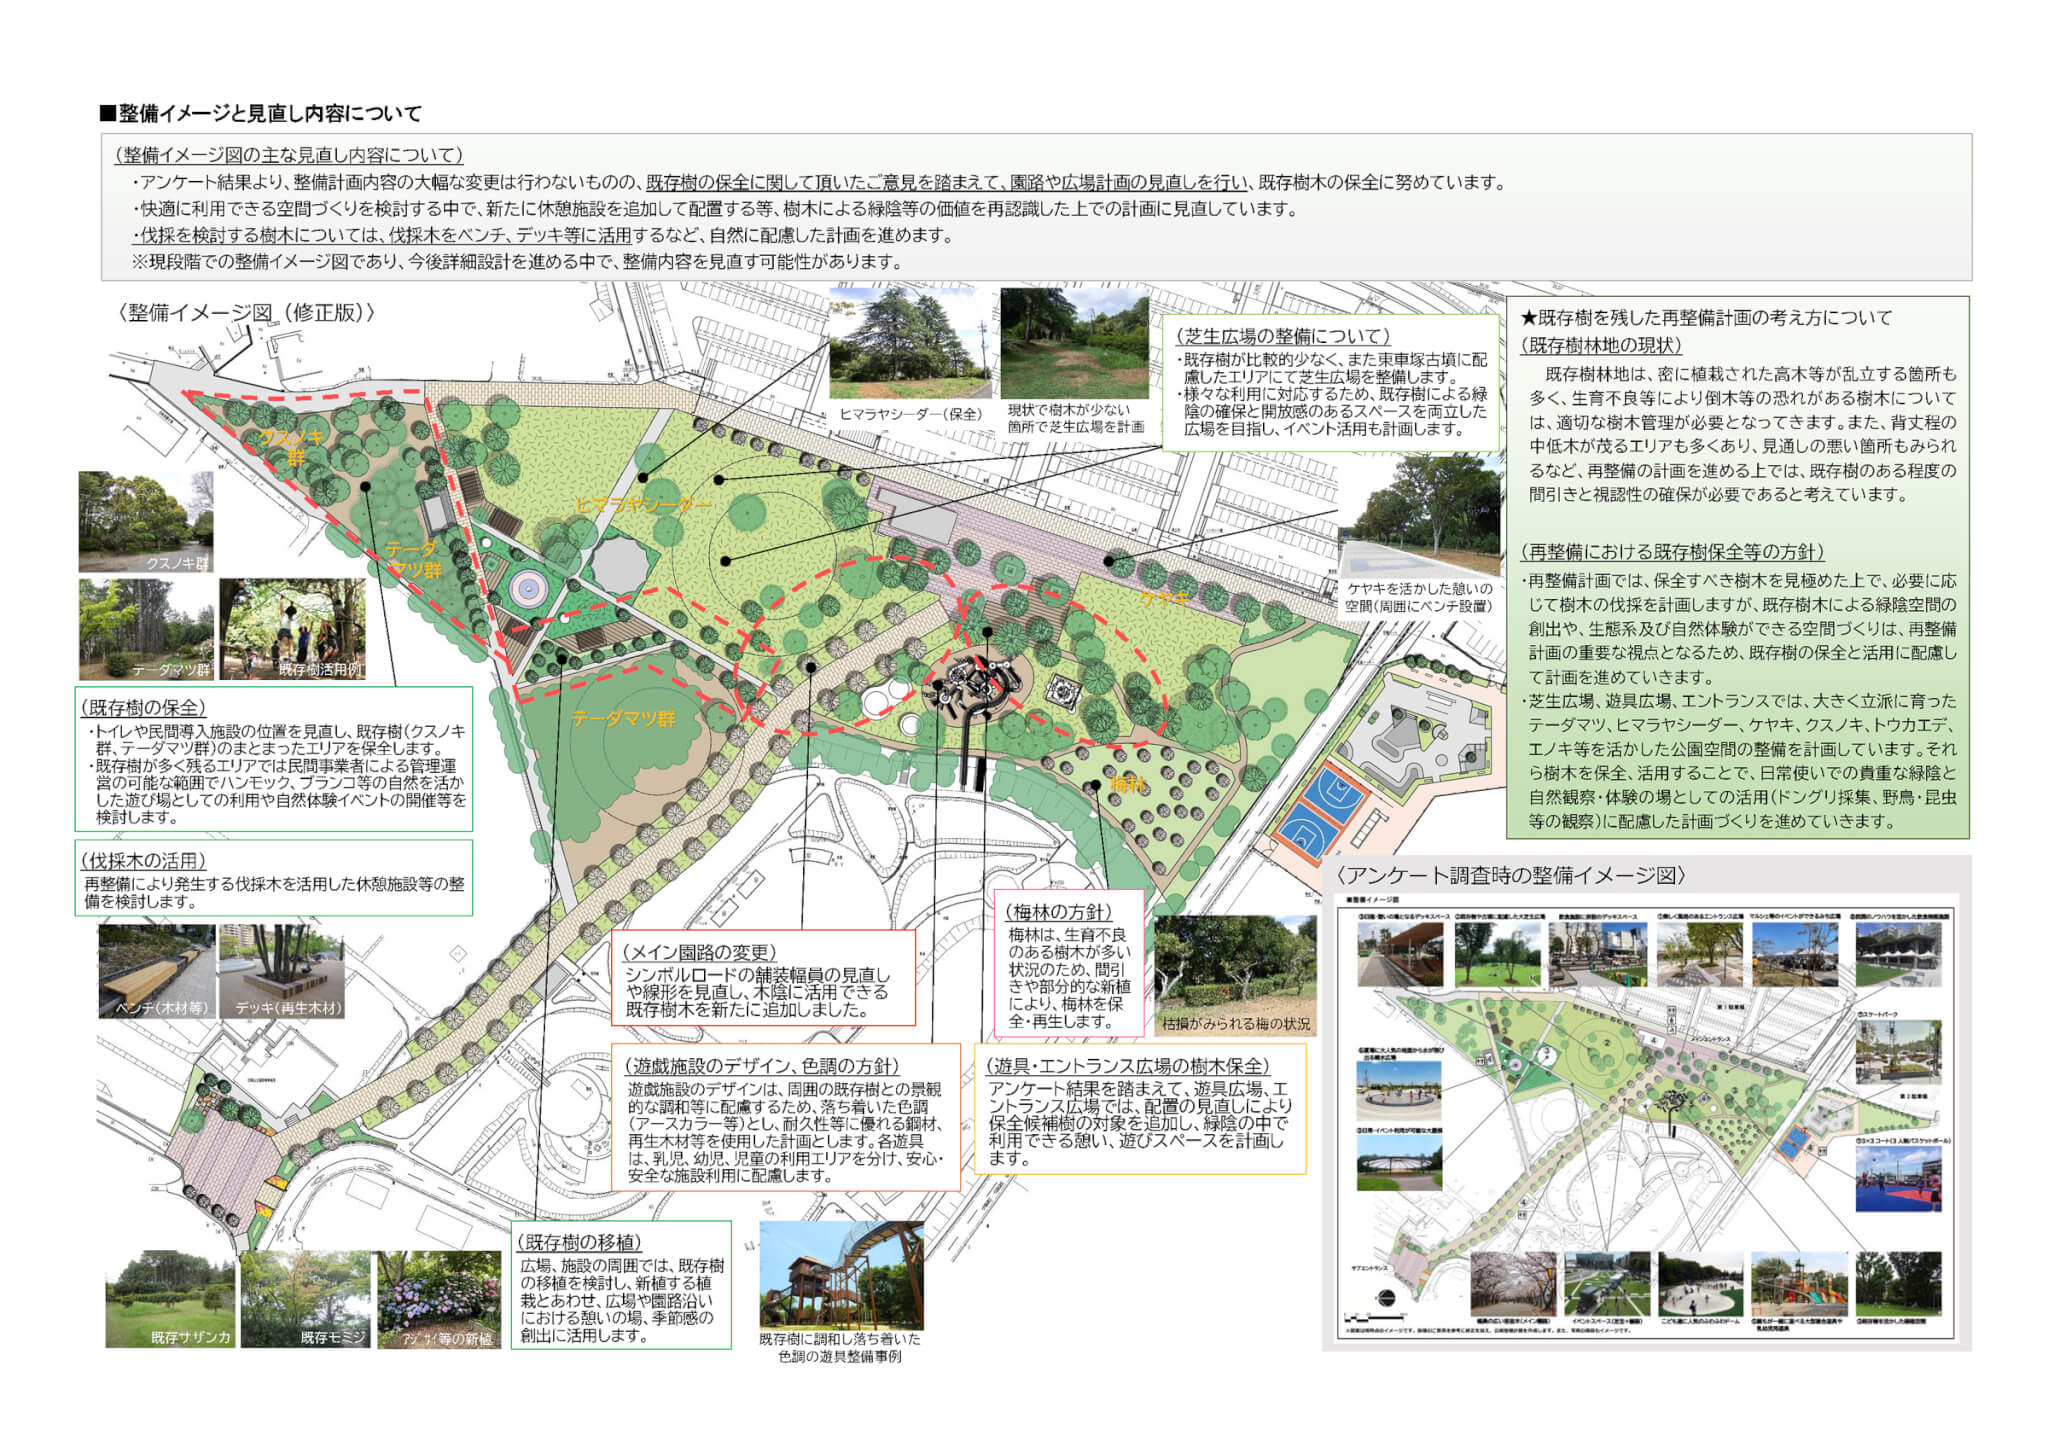 日岡山公園再整備イメージと見直し内容について